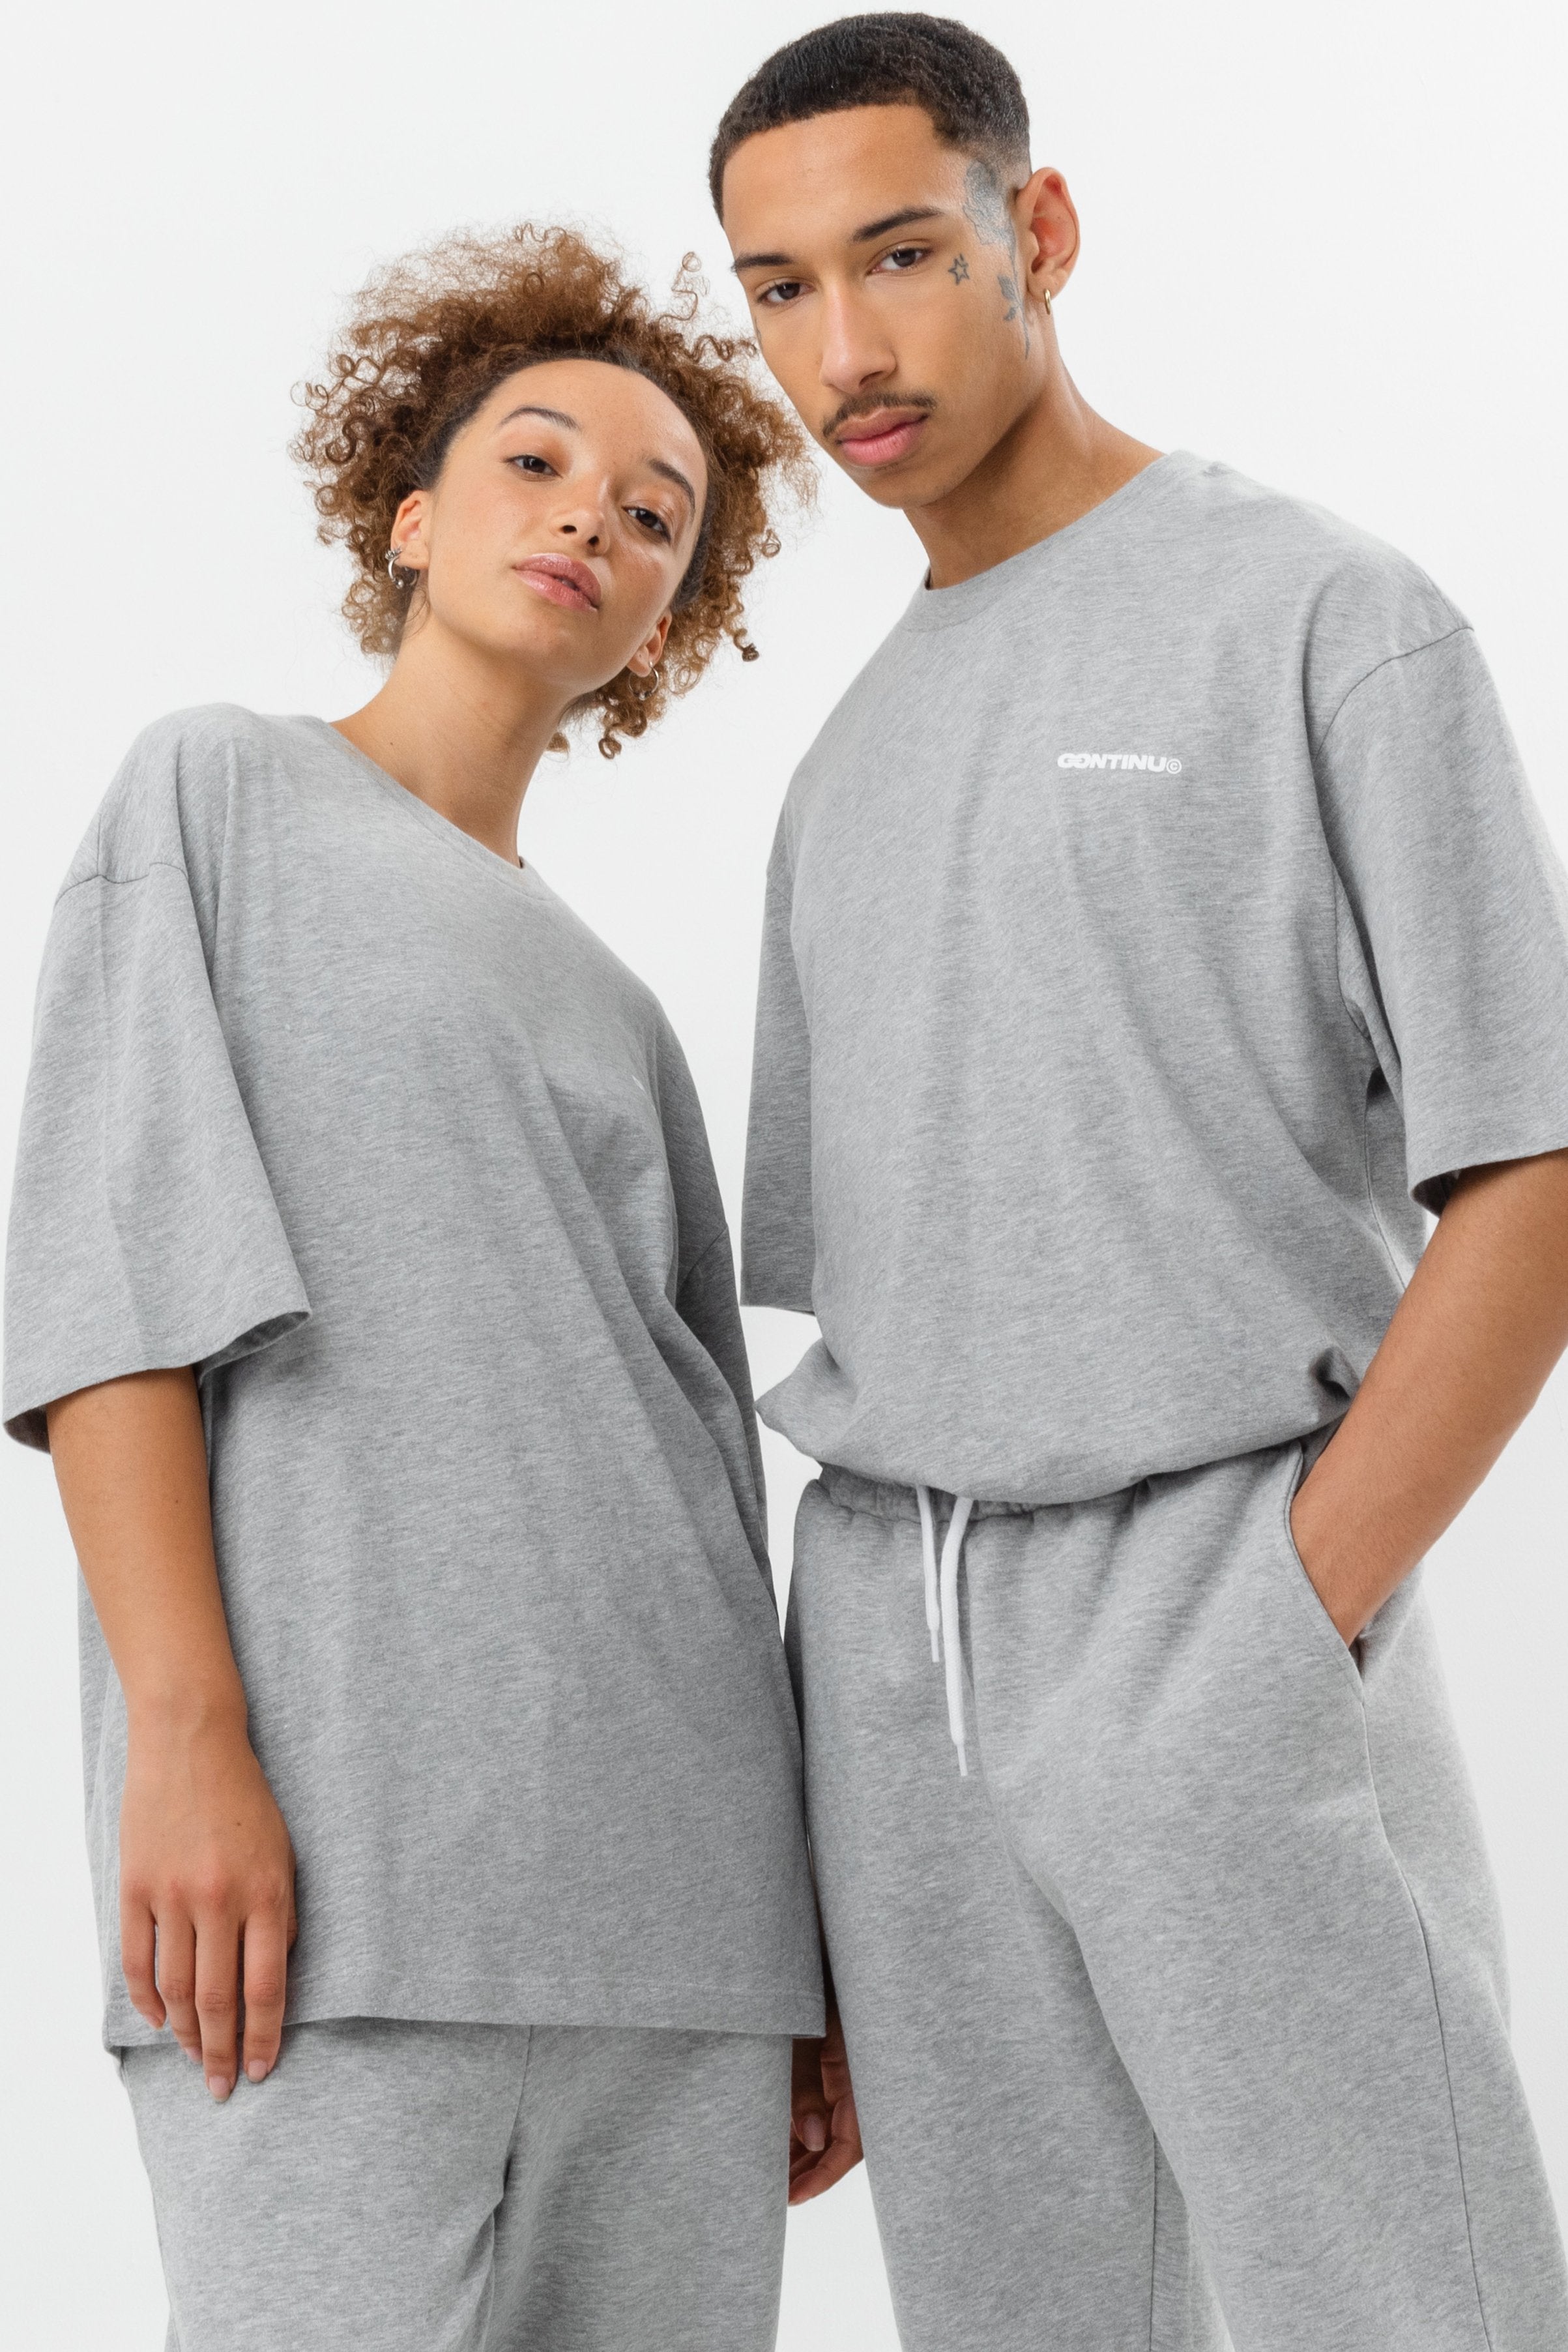 continu8 grey oversized t-shirt